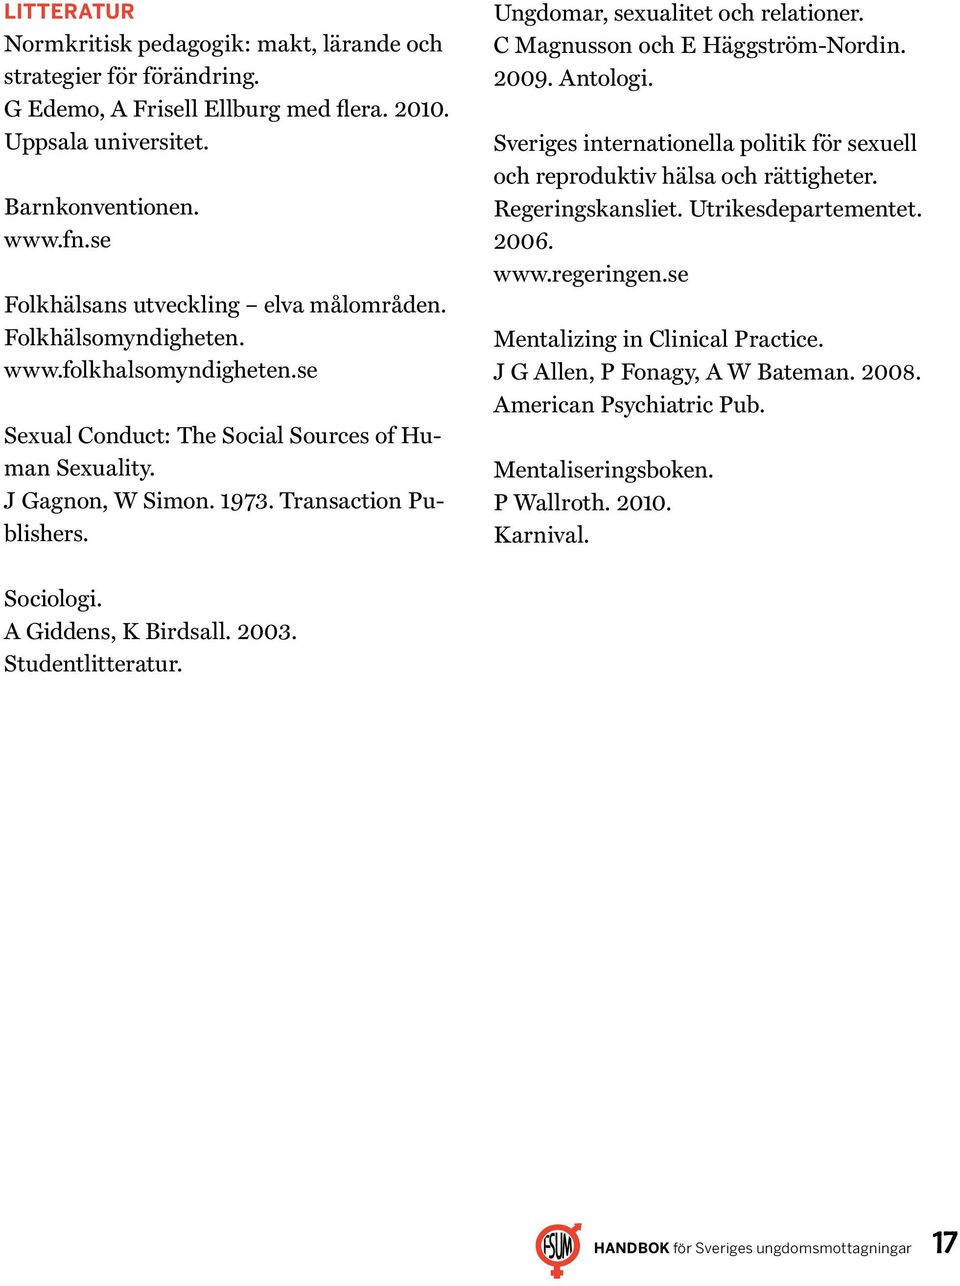 Ungdomar, sexualitet och relationer. C Magnusson och E Häggström-Nordin. 2009. Antologi. Sveriges internationella politik för sexuell och reproduktiv hälsa och rättigheter. Regeringskansliet.